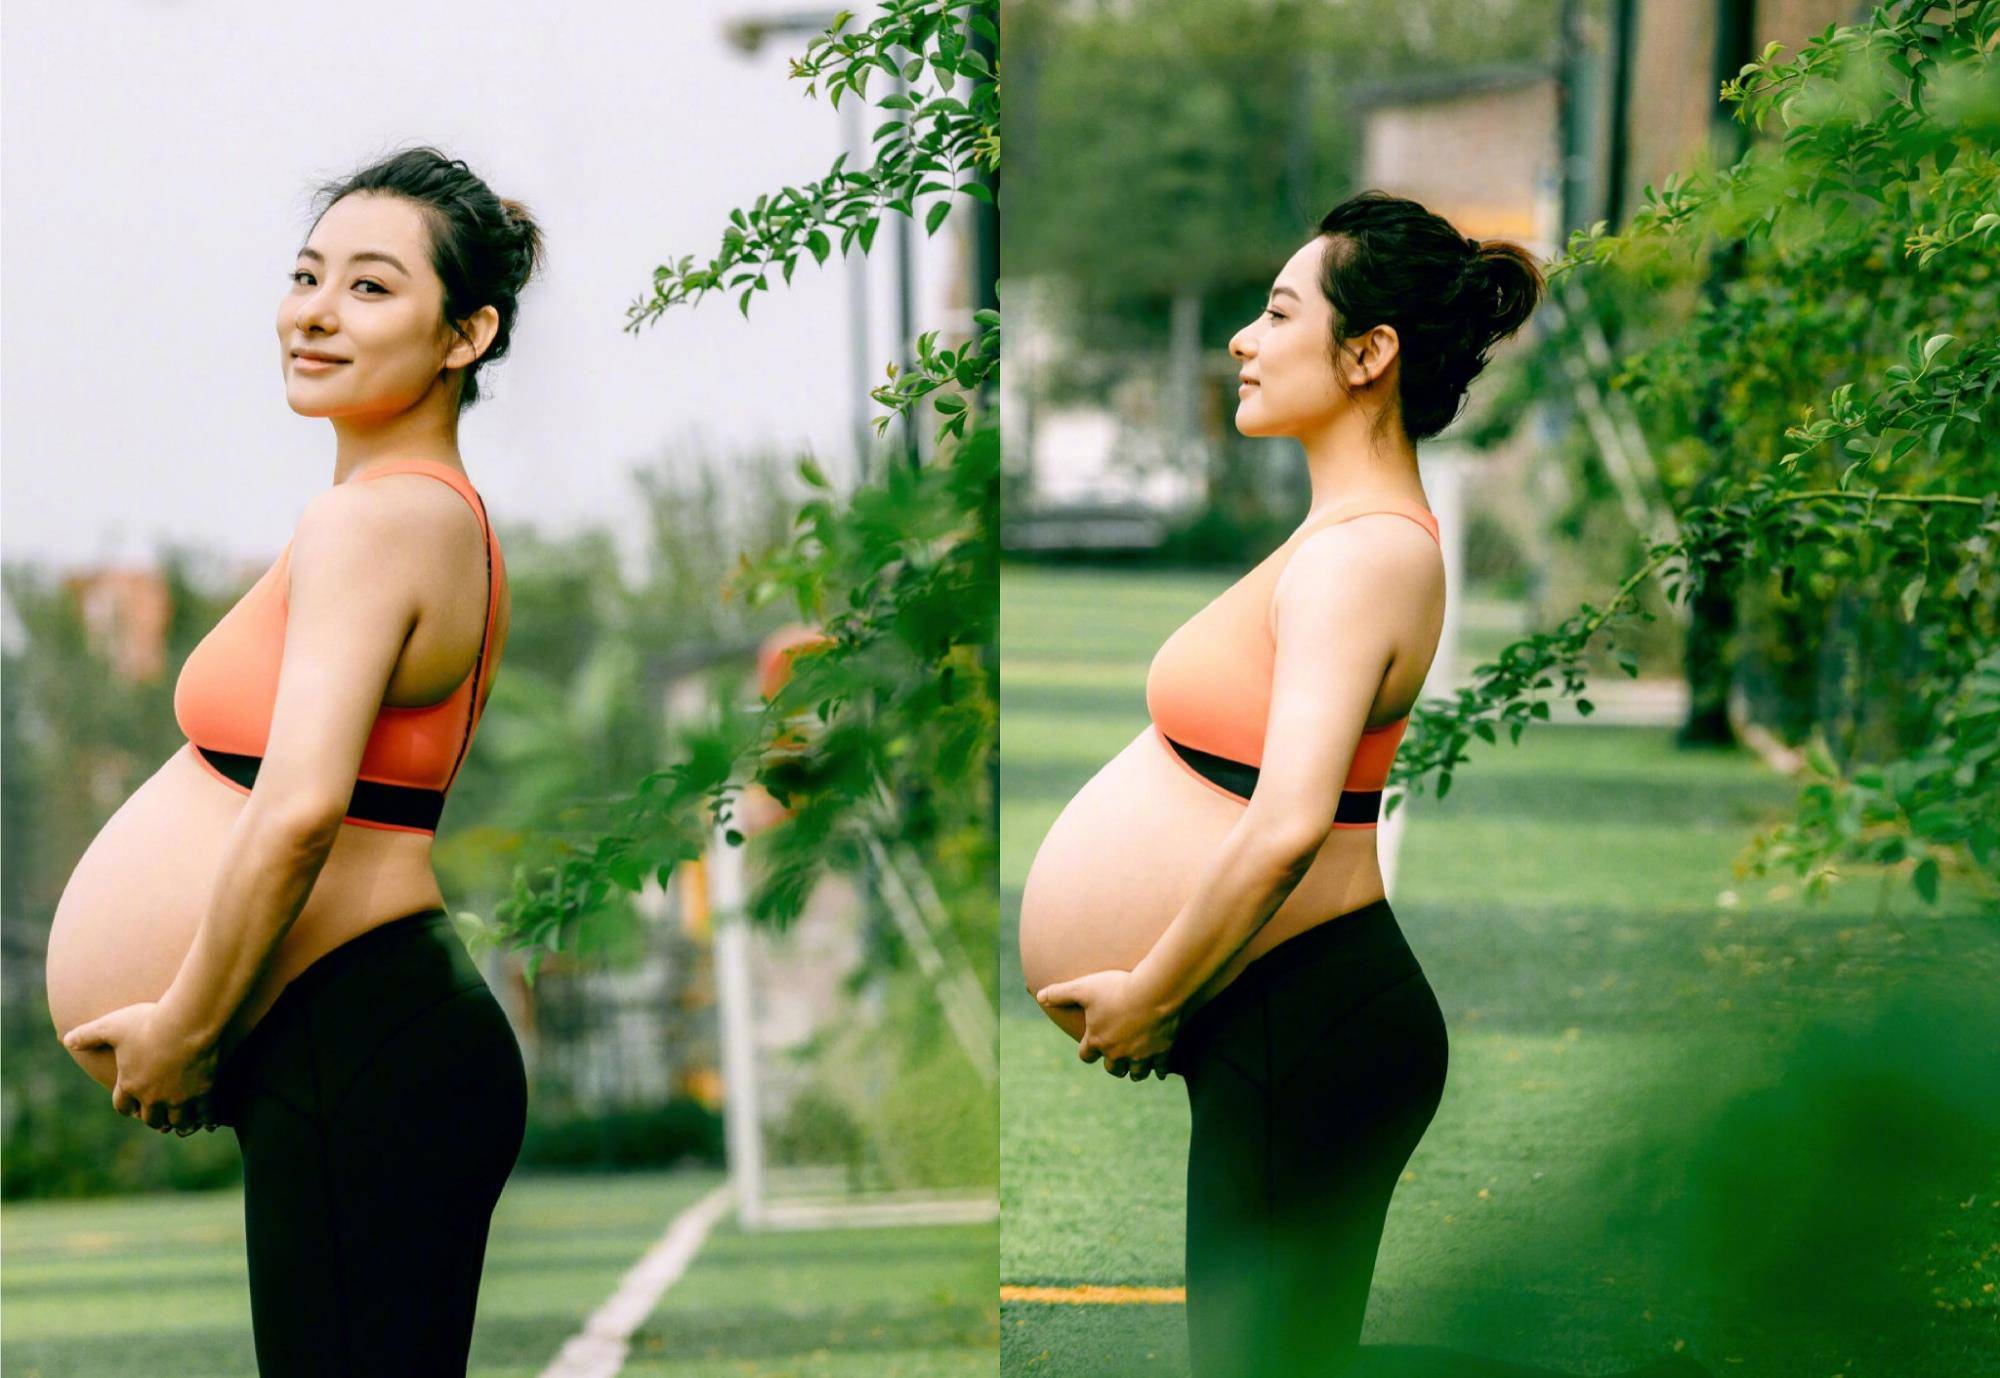 刘璇晒孕肚玩高难度动作,倒立一字马,被誉为超人妈妈